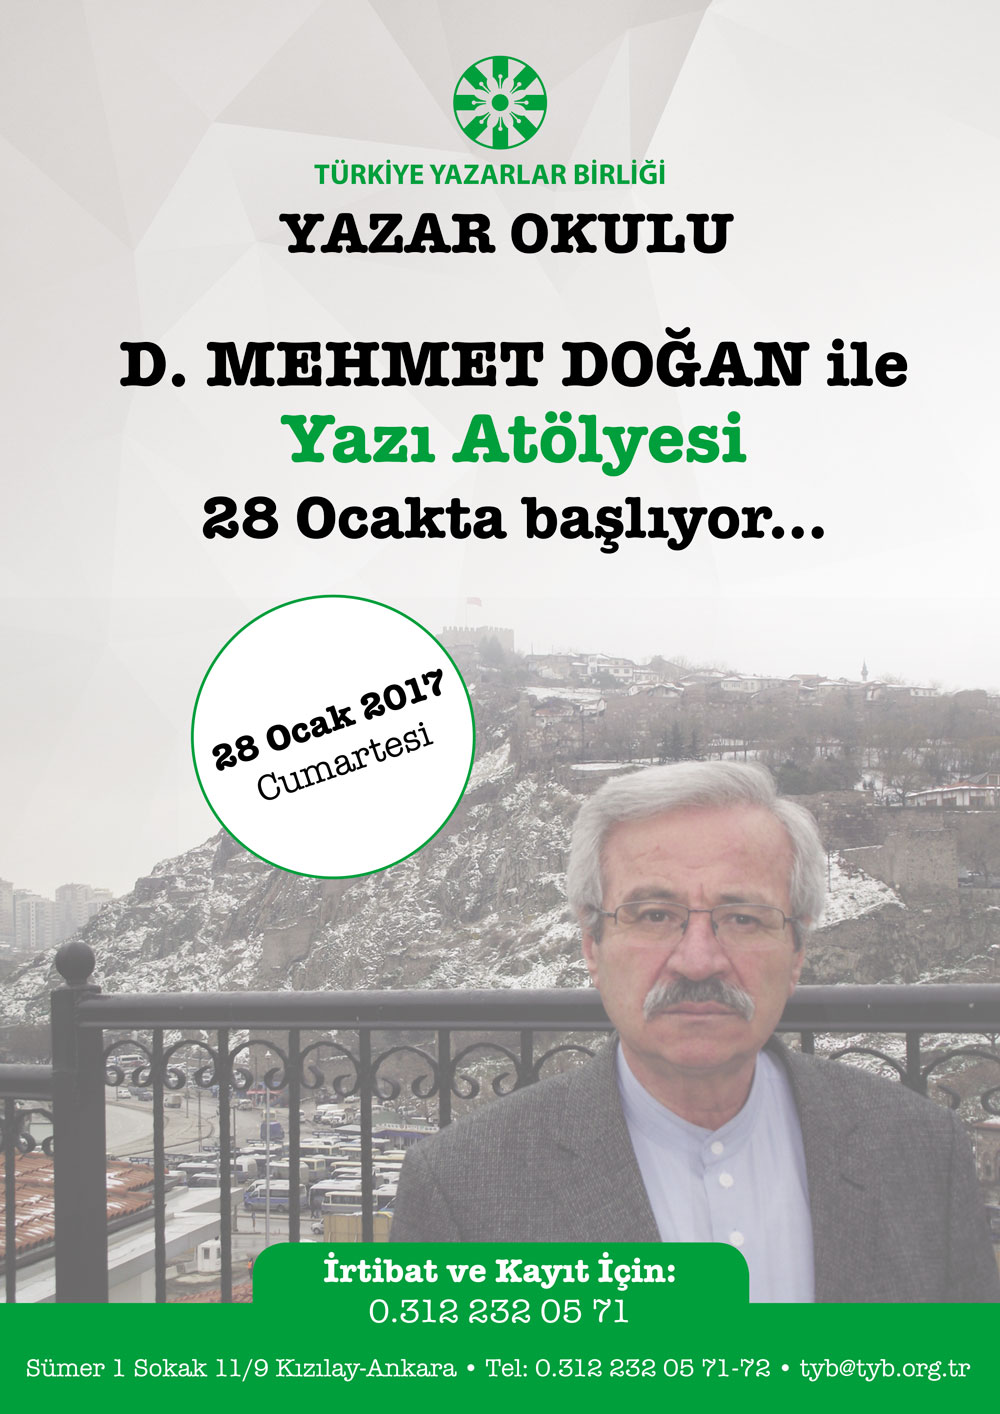 D. Mehmet Doğan ile yazı atölyesi bugün başlıyor!